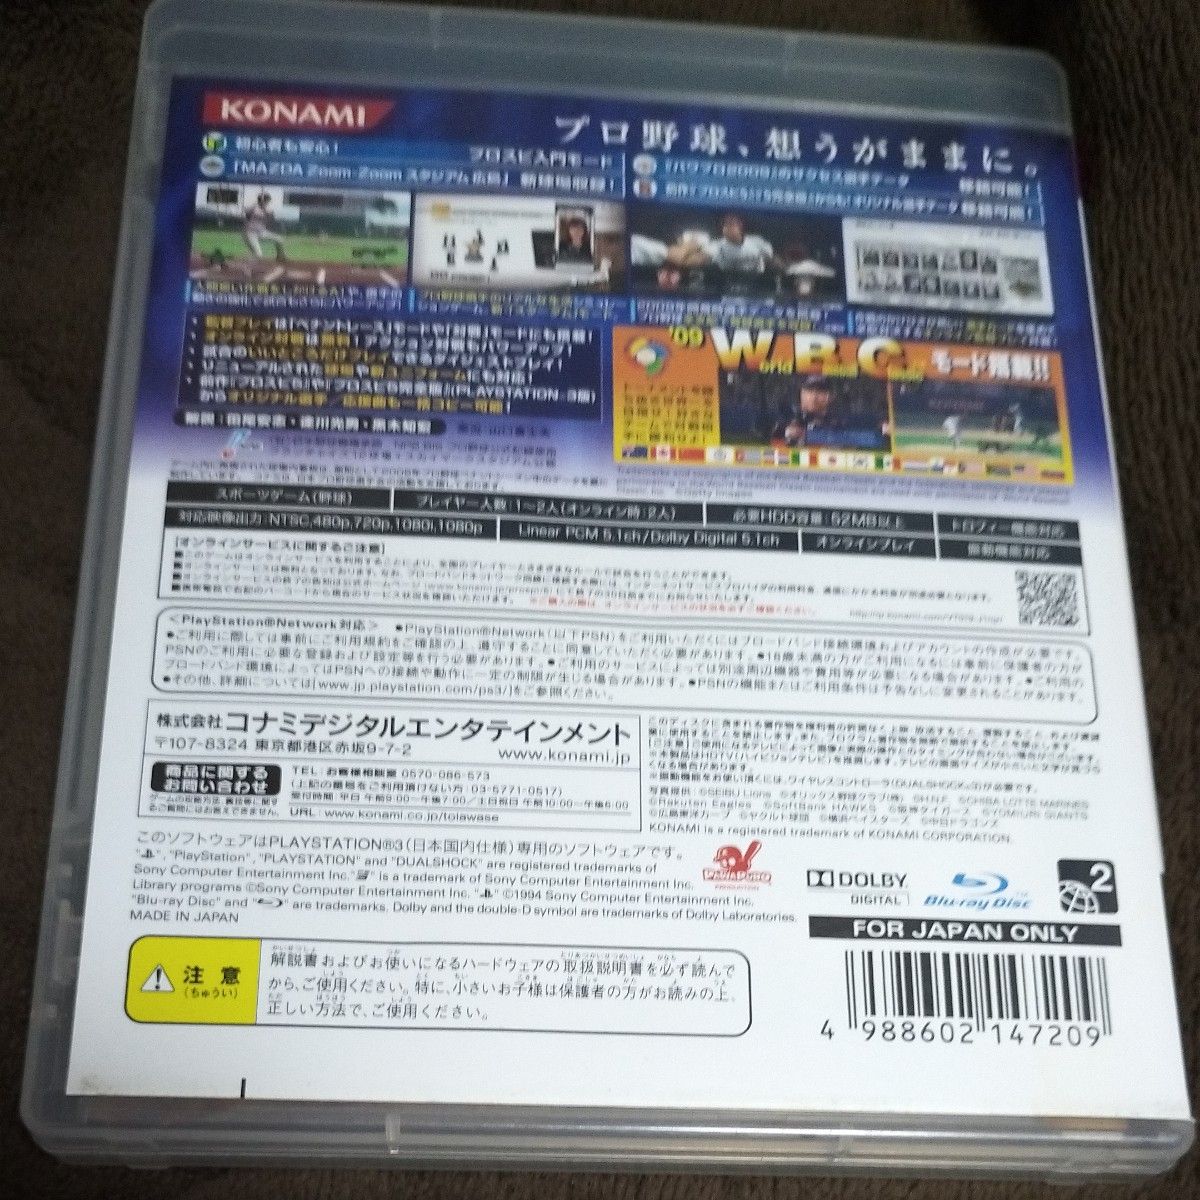 【PS3】 プロ野球スピリッツ6